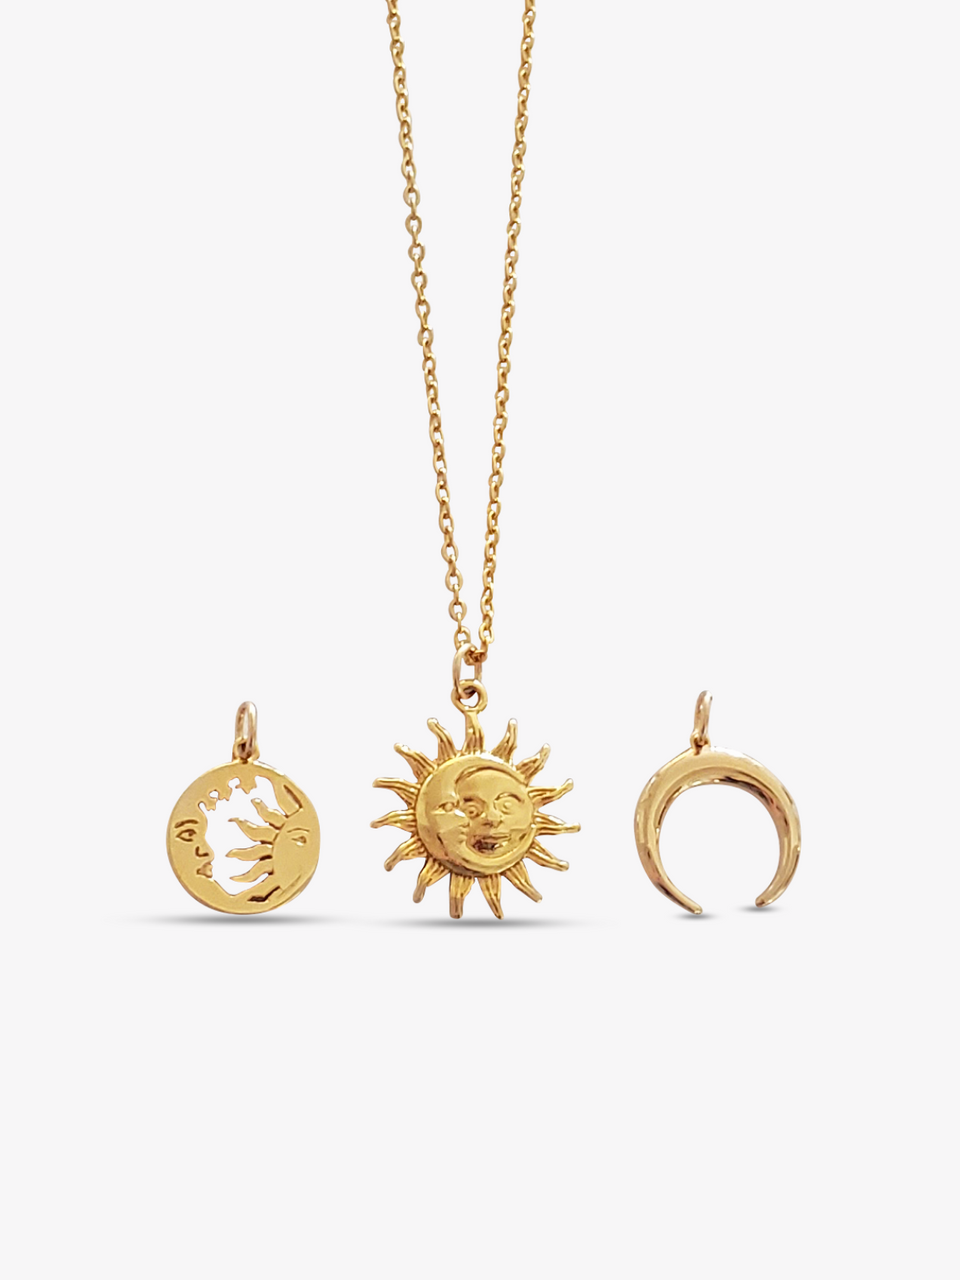 Momocreatura | Silver x Gold Cresent Moon and Sun Necklace | Cuemars –  CUEMARS